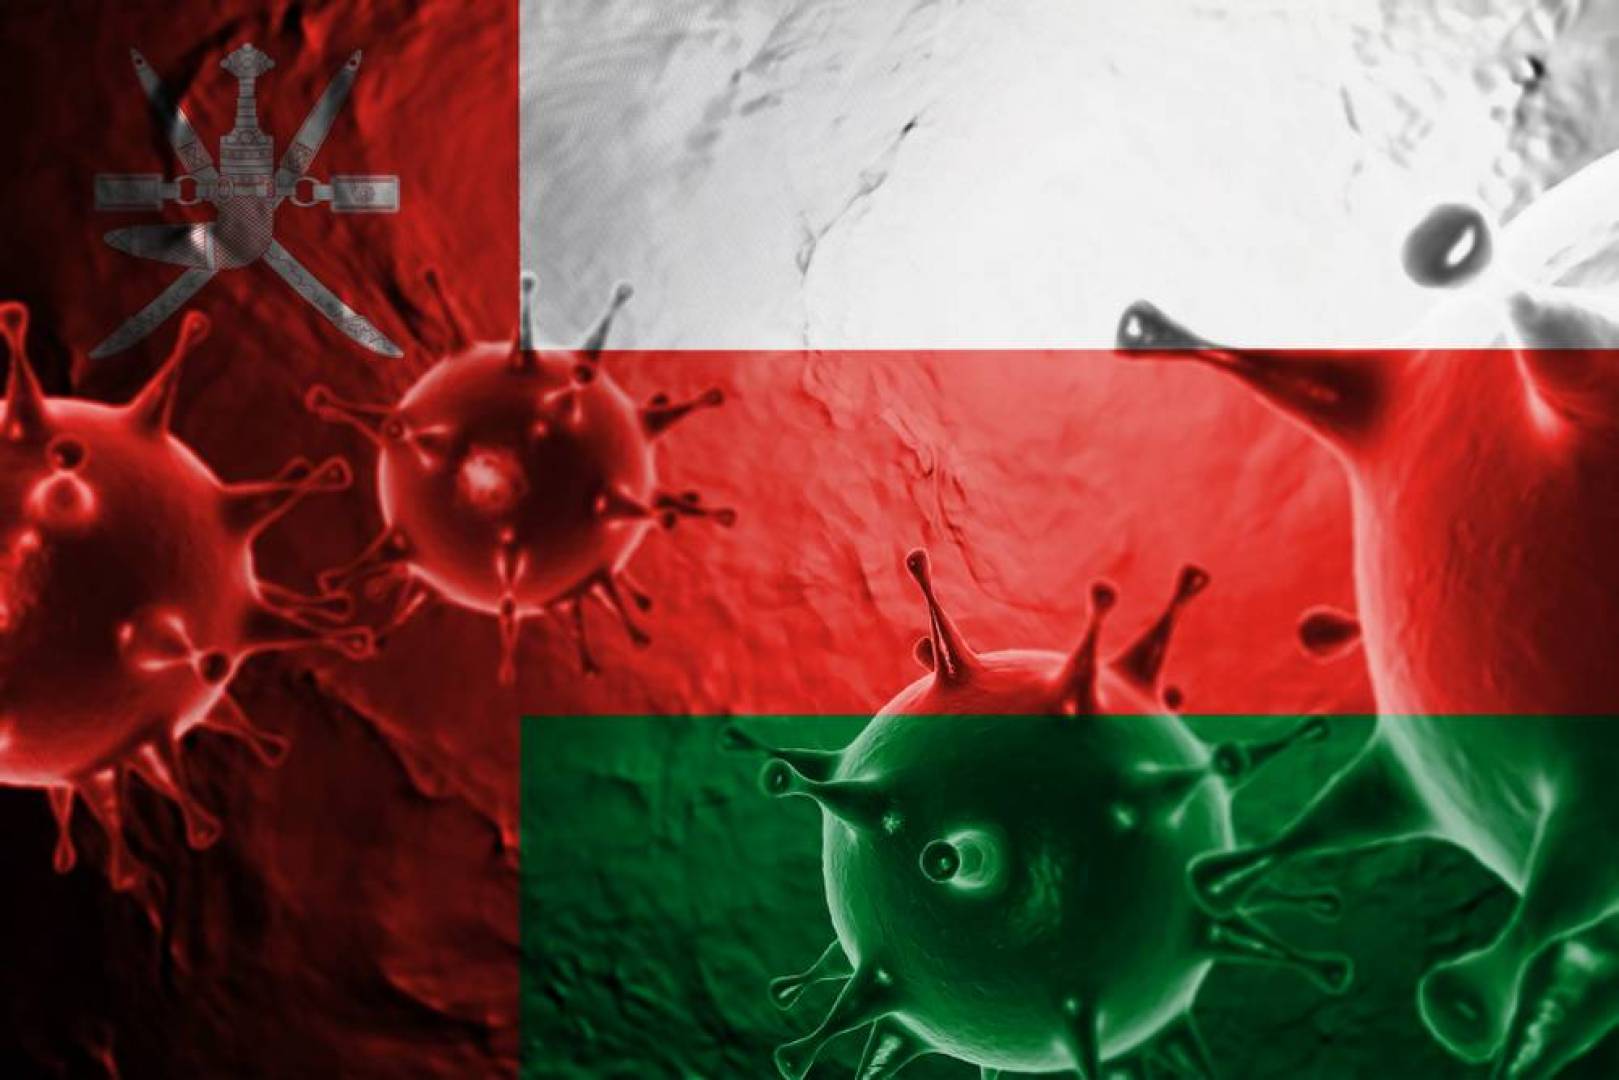 سلطنة عمان تنافس أمريكا في نسبة الإصابات بفيروس كورونا.. فيديو مؤلم | وطن الدبور